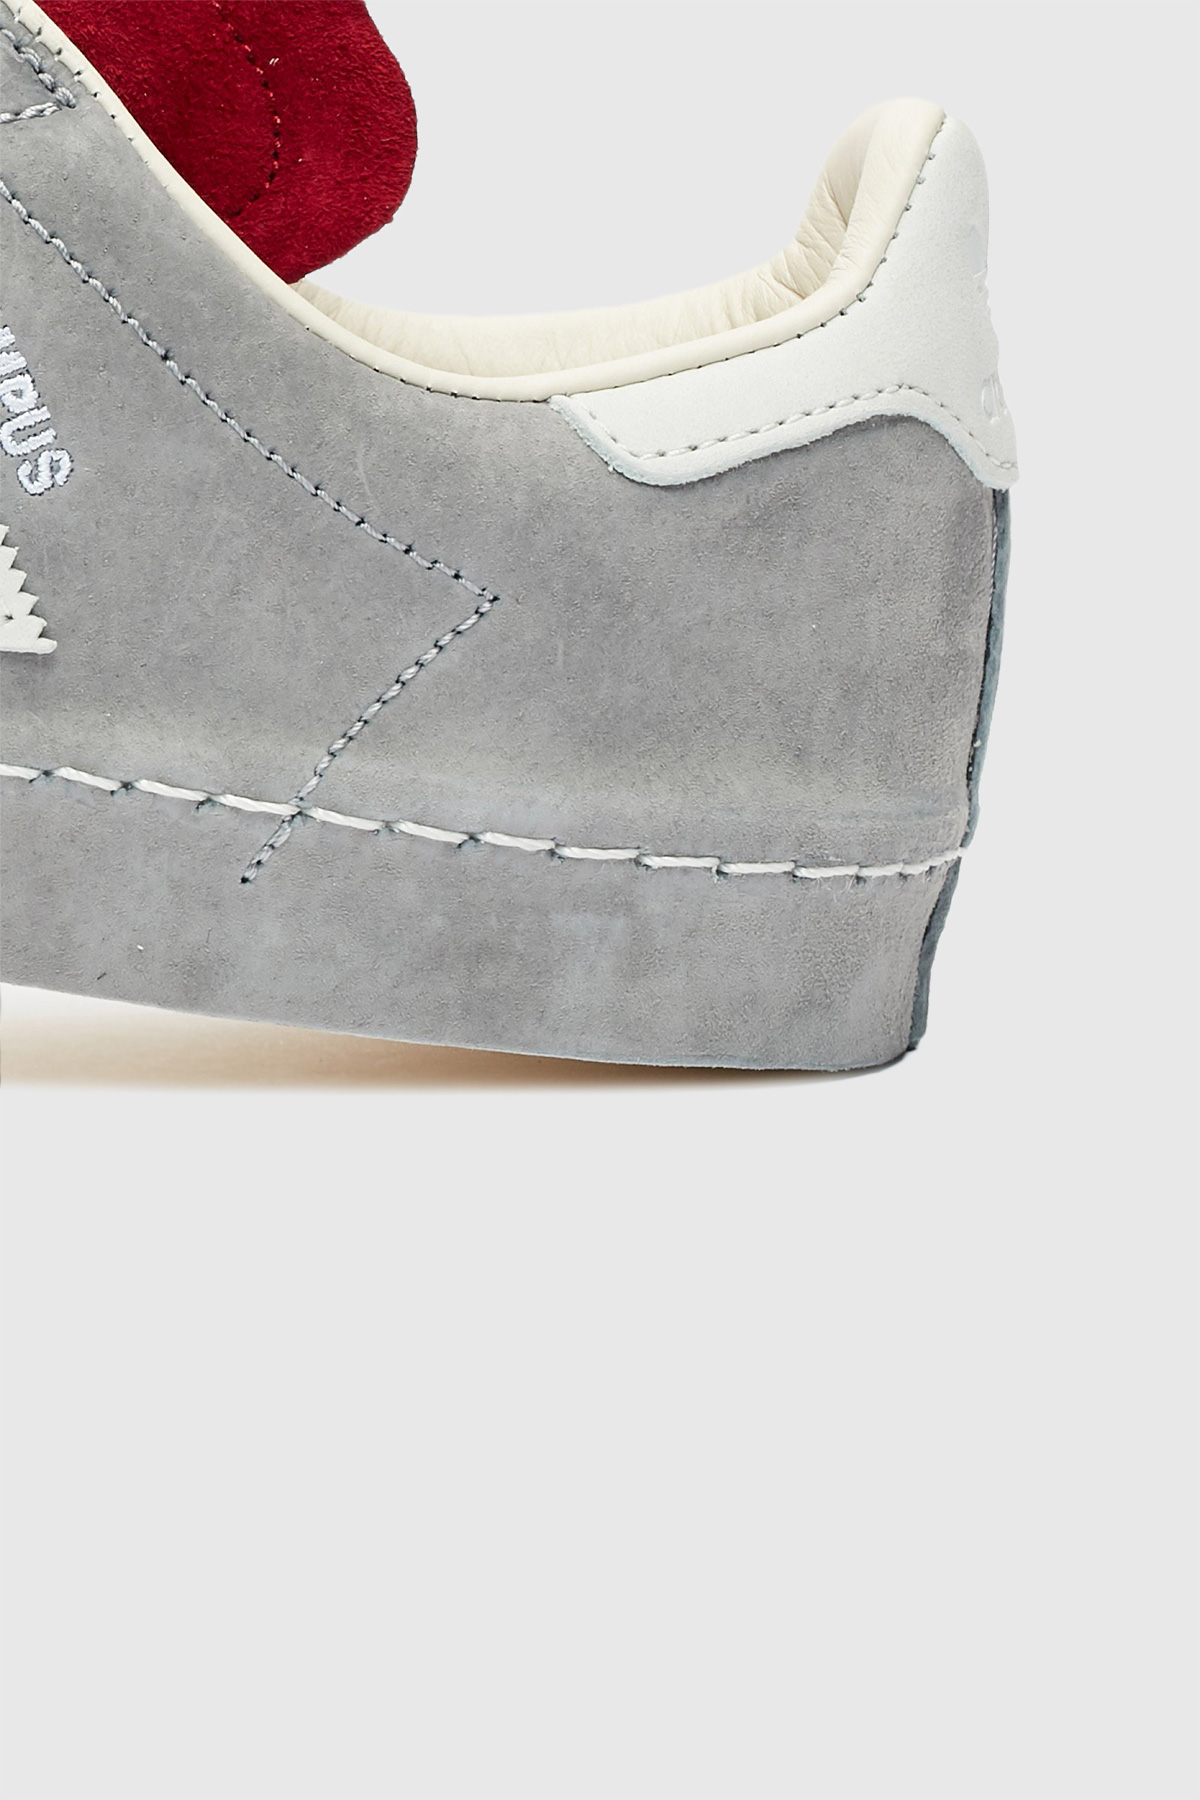 adidas campus grey size 7